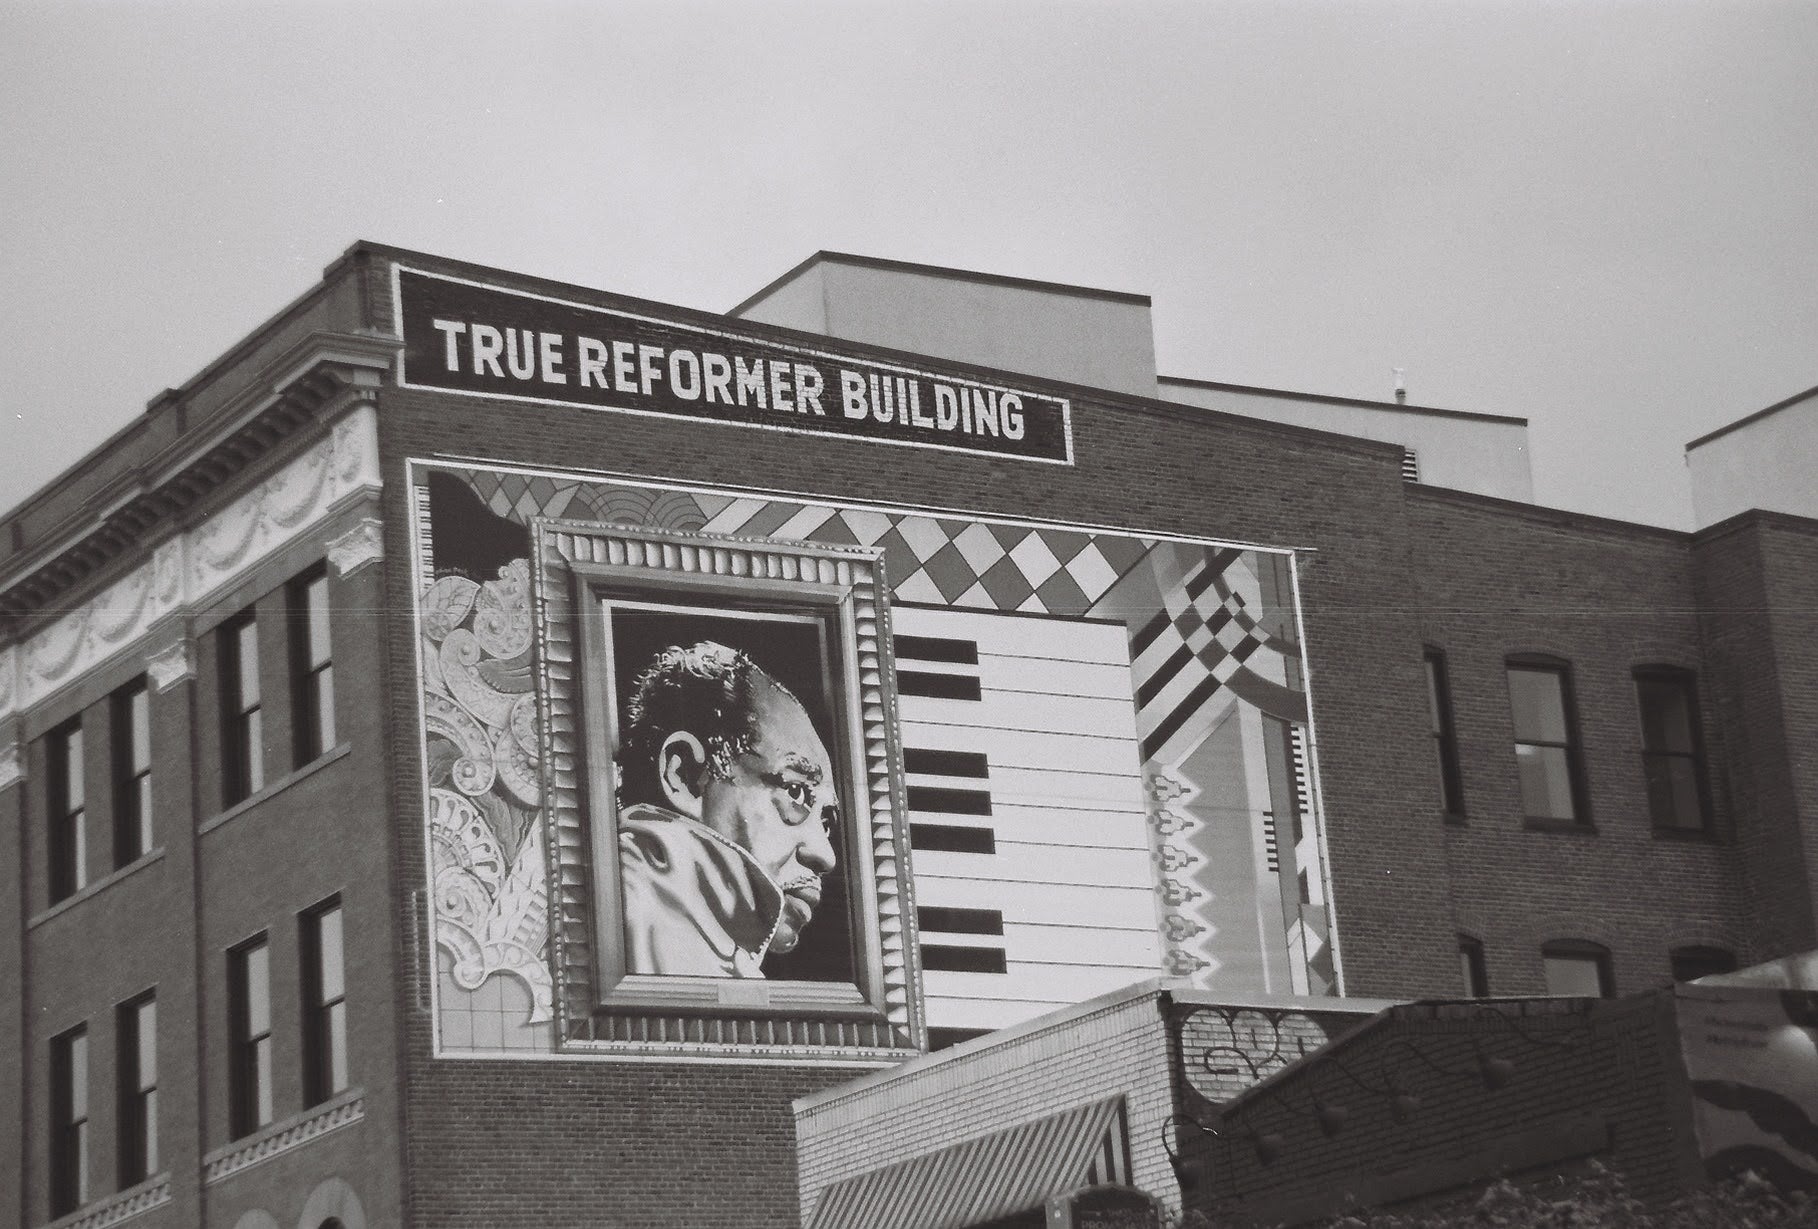 Giant mural of duke Ellington on brick building